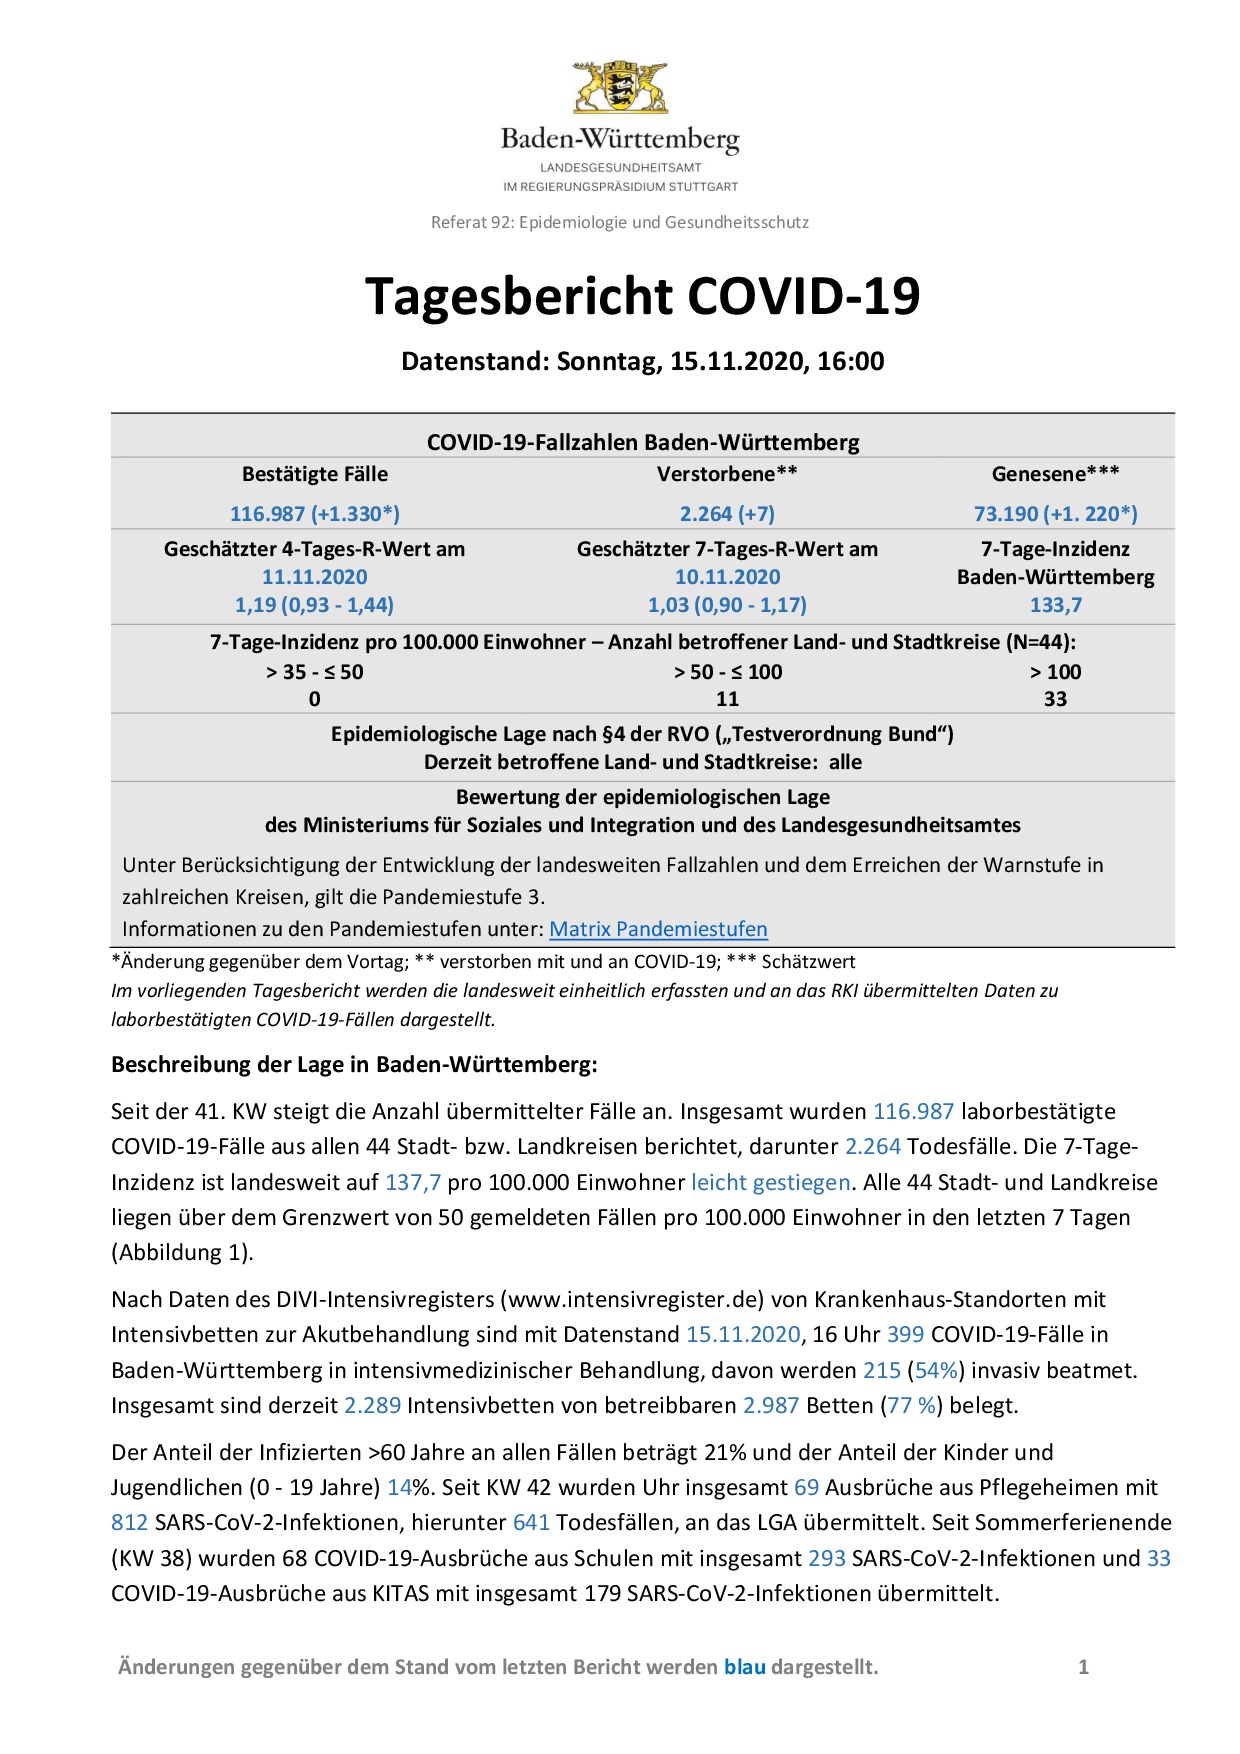 COVID-19 Tagesbericht (15.11.2020) des Landesgesundheitsamts Baden-Württemberg – (ausführlicher)